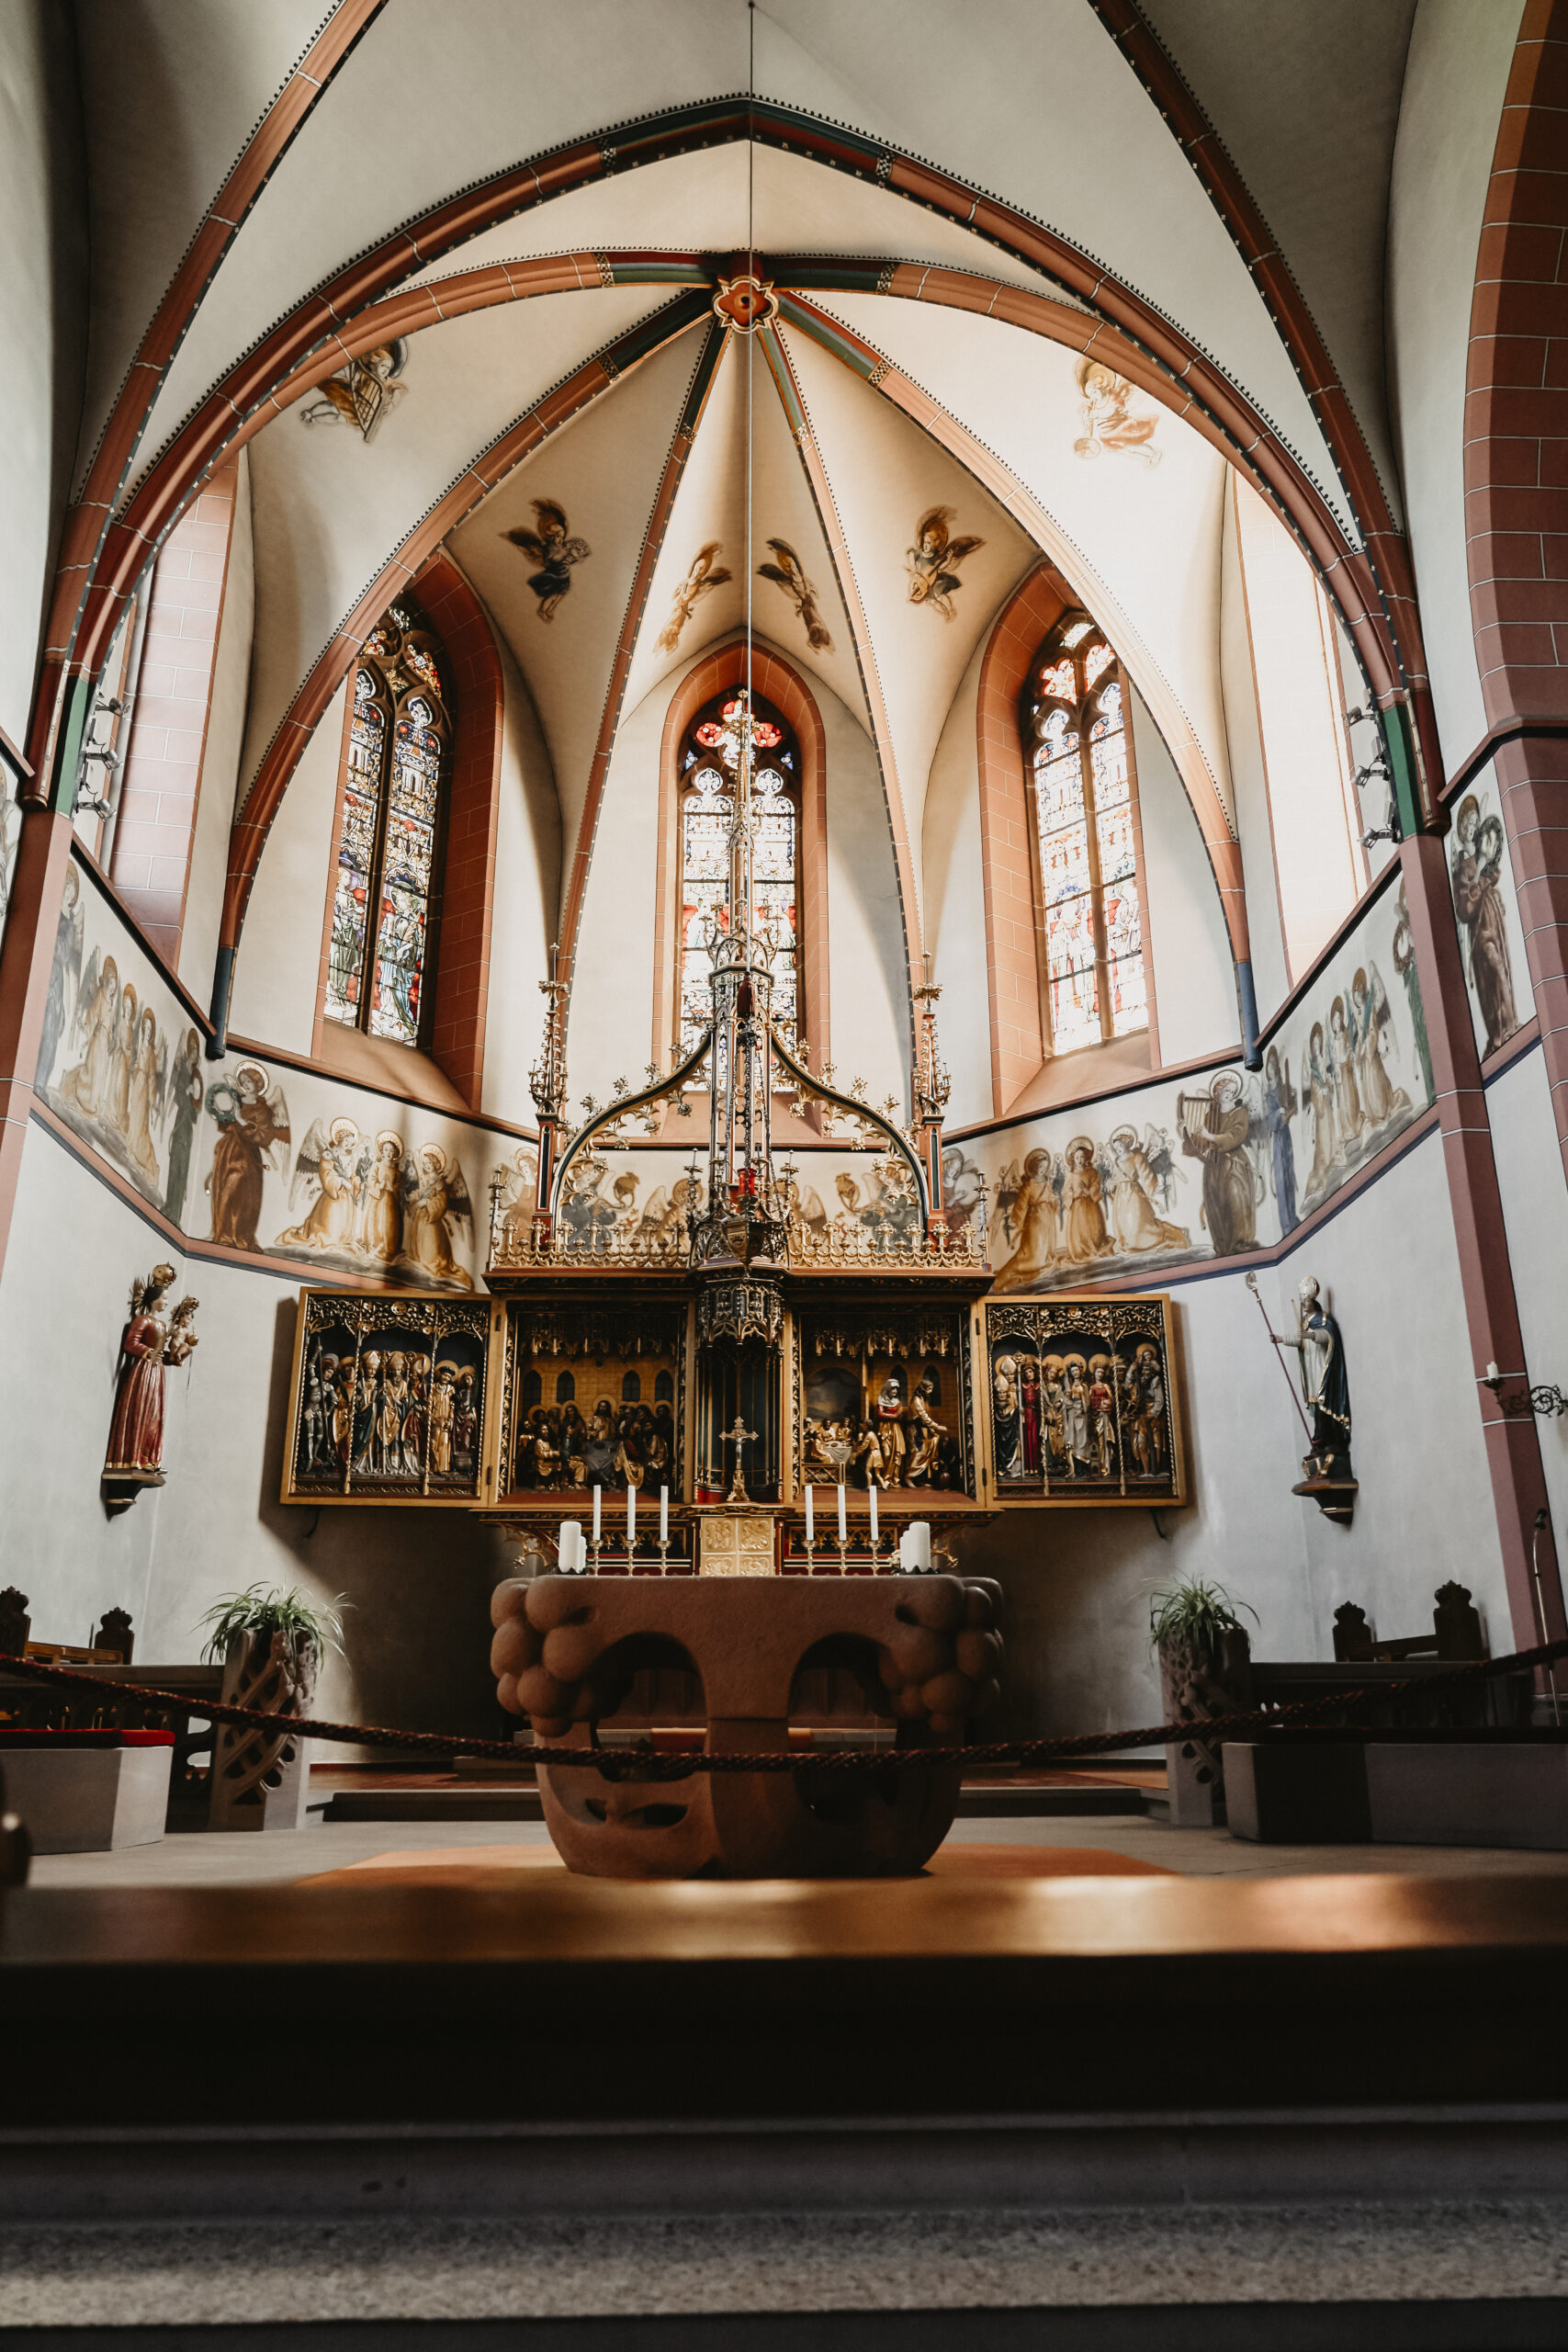 Frontale Aufnahme des Altars in der Kirche mit einer magischen Energie und den bemalten Kirchenfenstern.